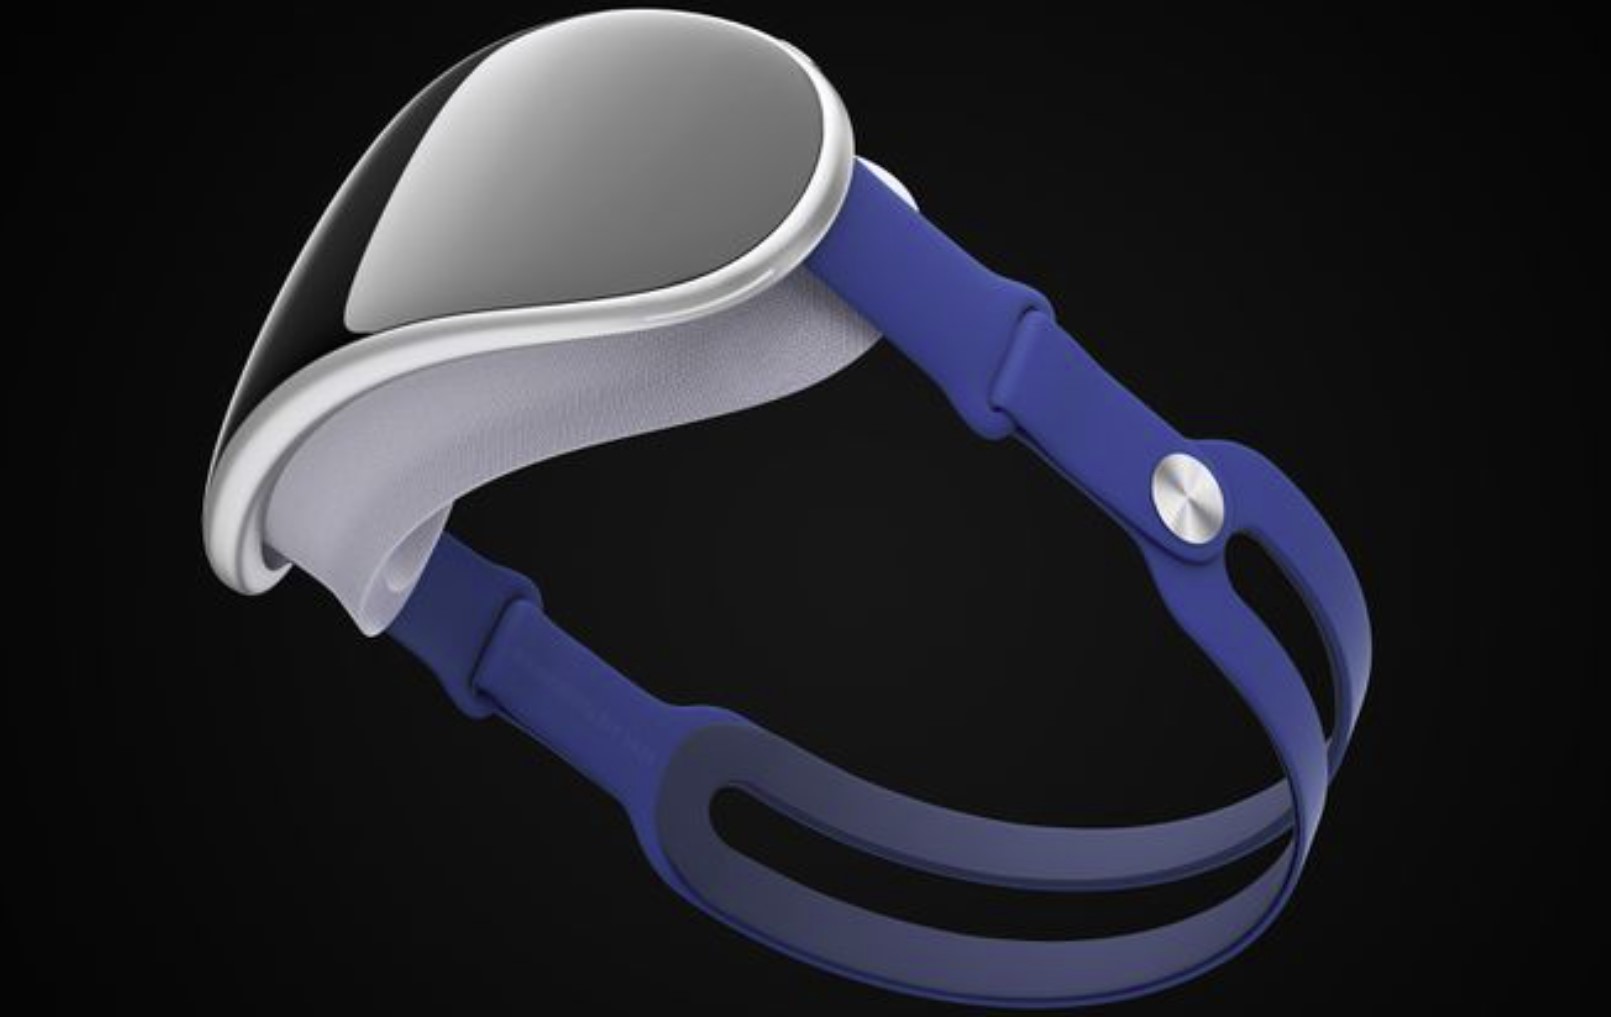 Marque déposée "realityOS" d'Apple, allusion au lancement prochain d'un casque AR / VR